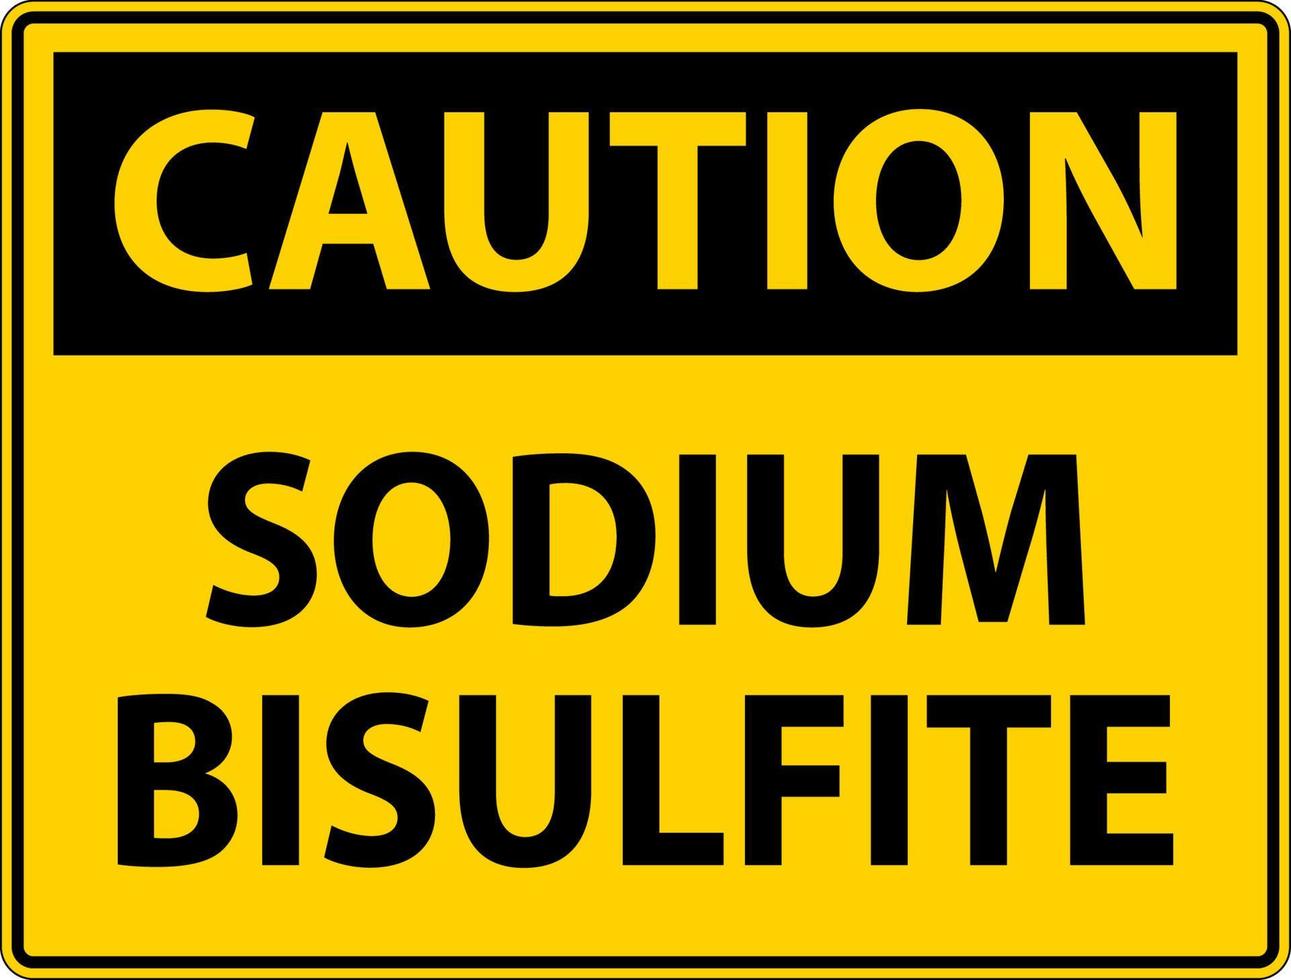 señal de precaución química etiqueta de bisulfito de sodio vector